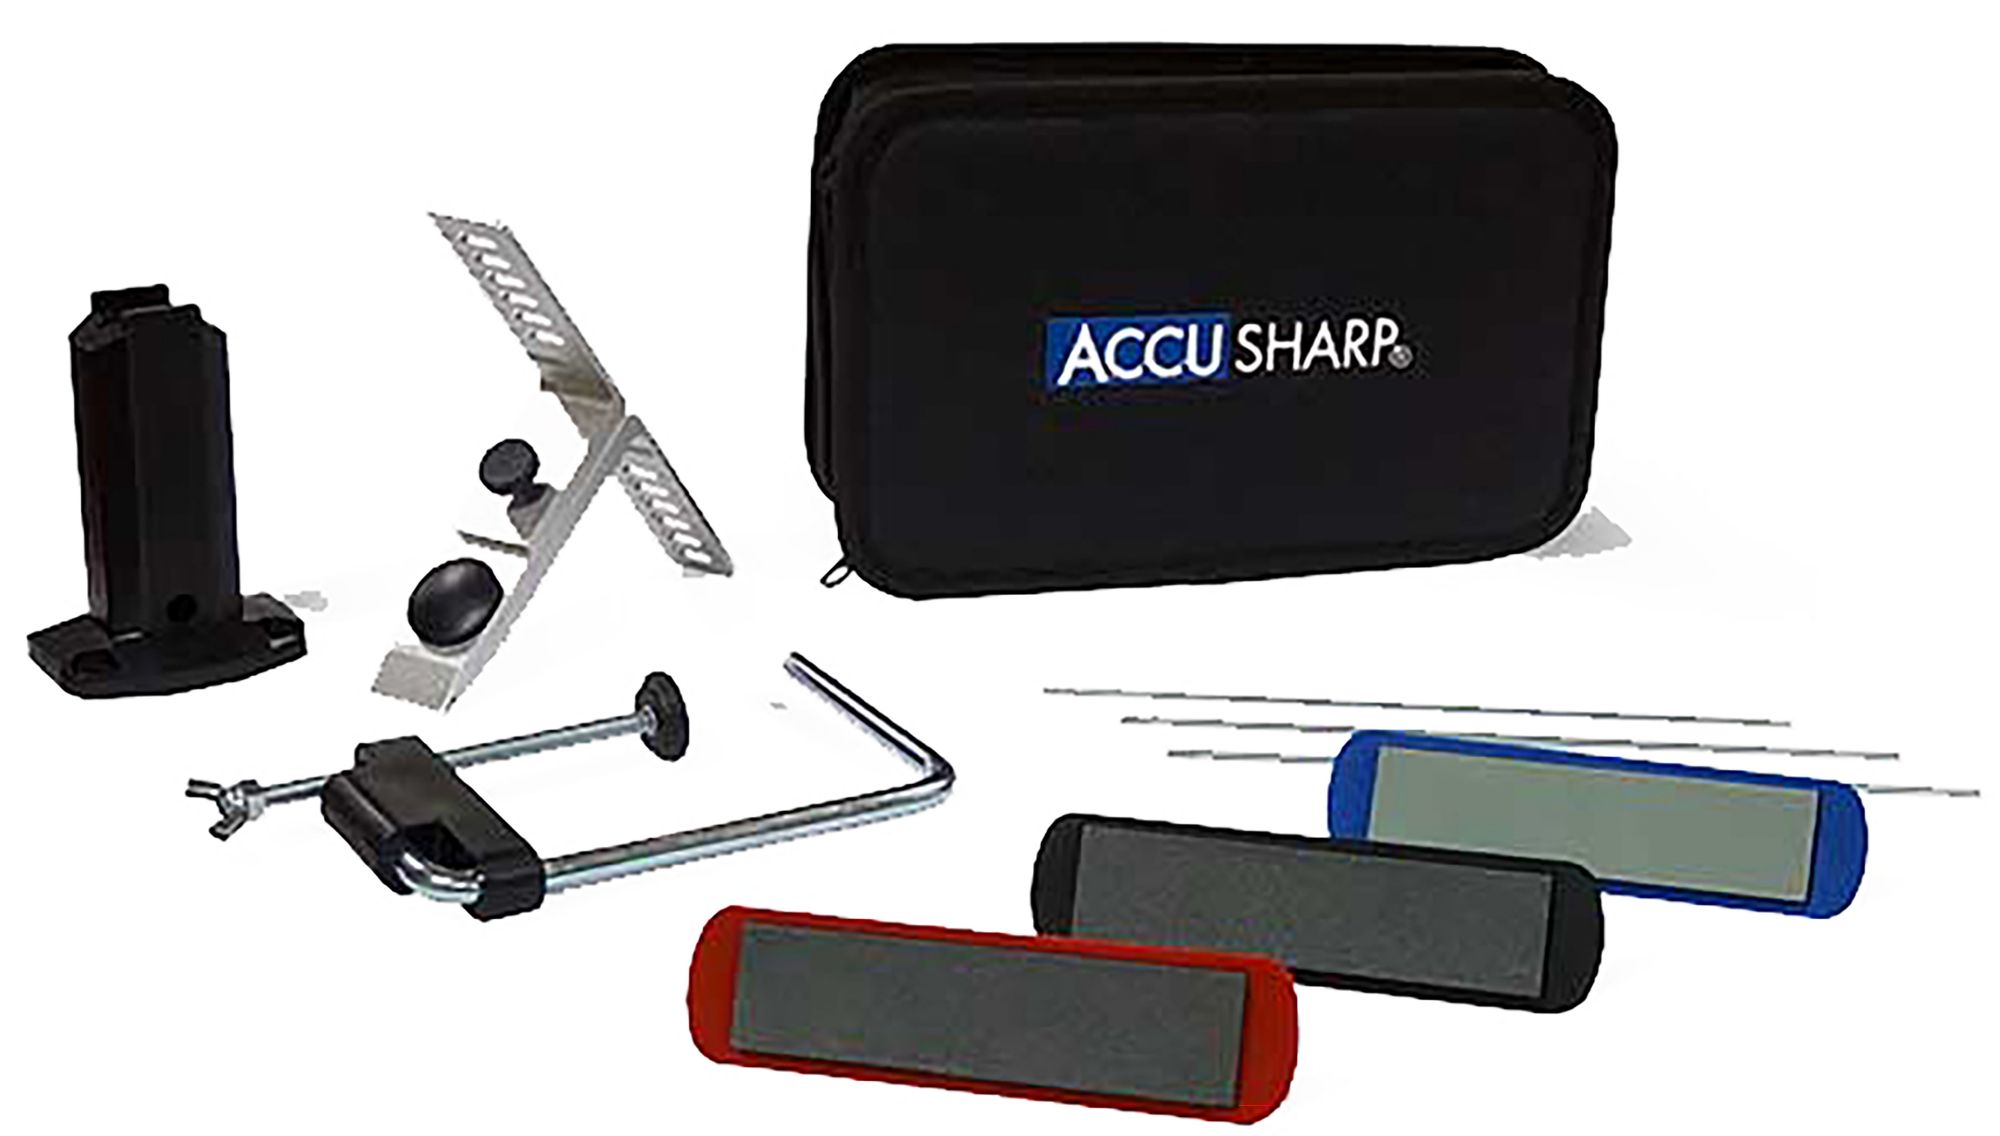 AccuSharp 3-Stone Precision Sharpening Kit